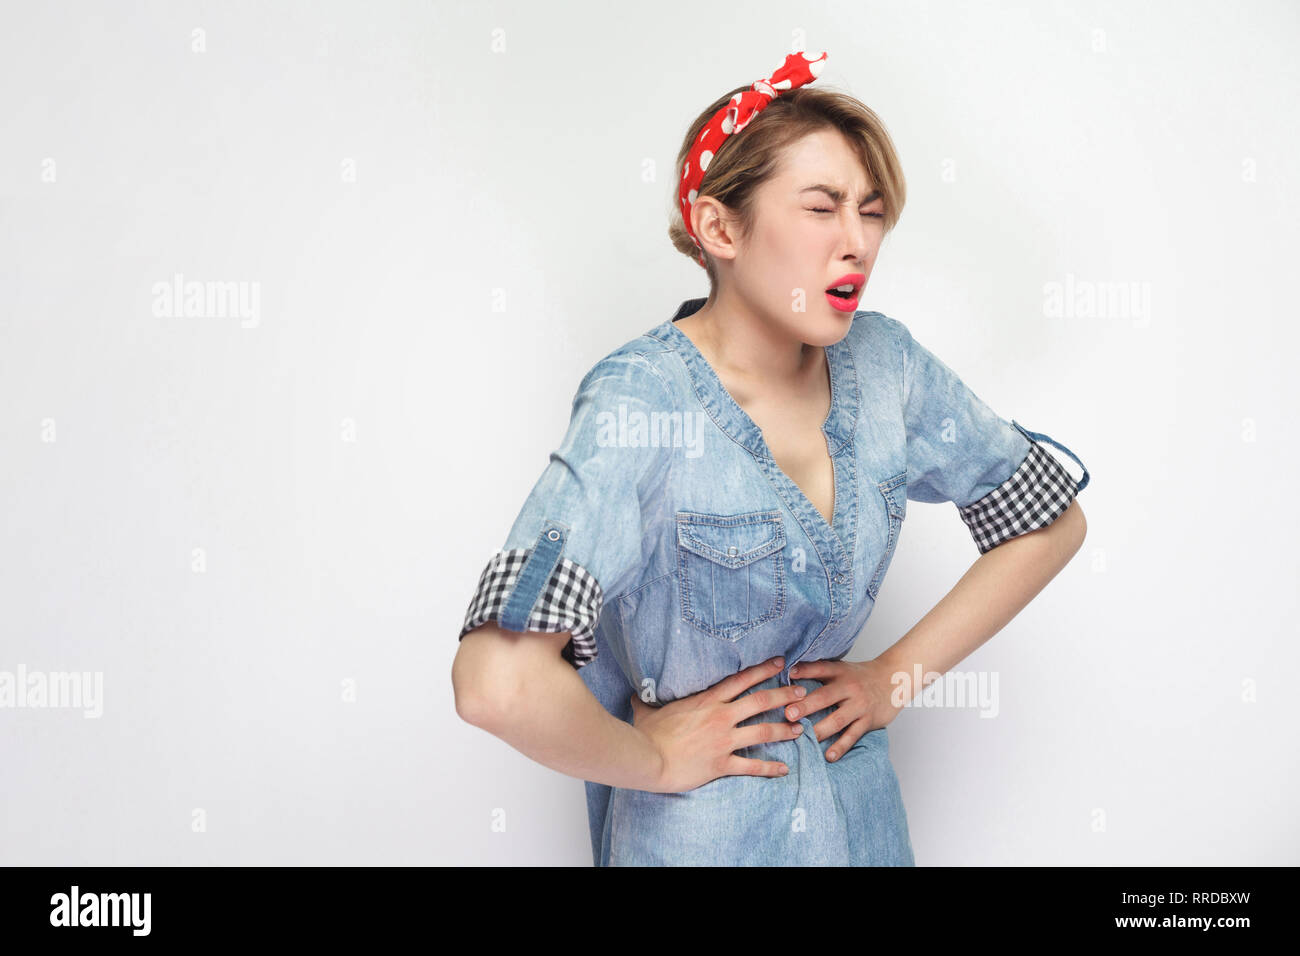 La douleur d'estomac ou de période. Portrait de la belle jeune femme en chemise en denim bleu décontracté avec un miroir, bandeau rouge debout et tenant son ventre douloureux. Banque D'Images